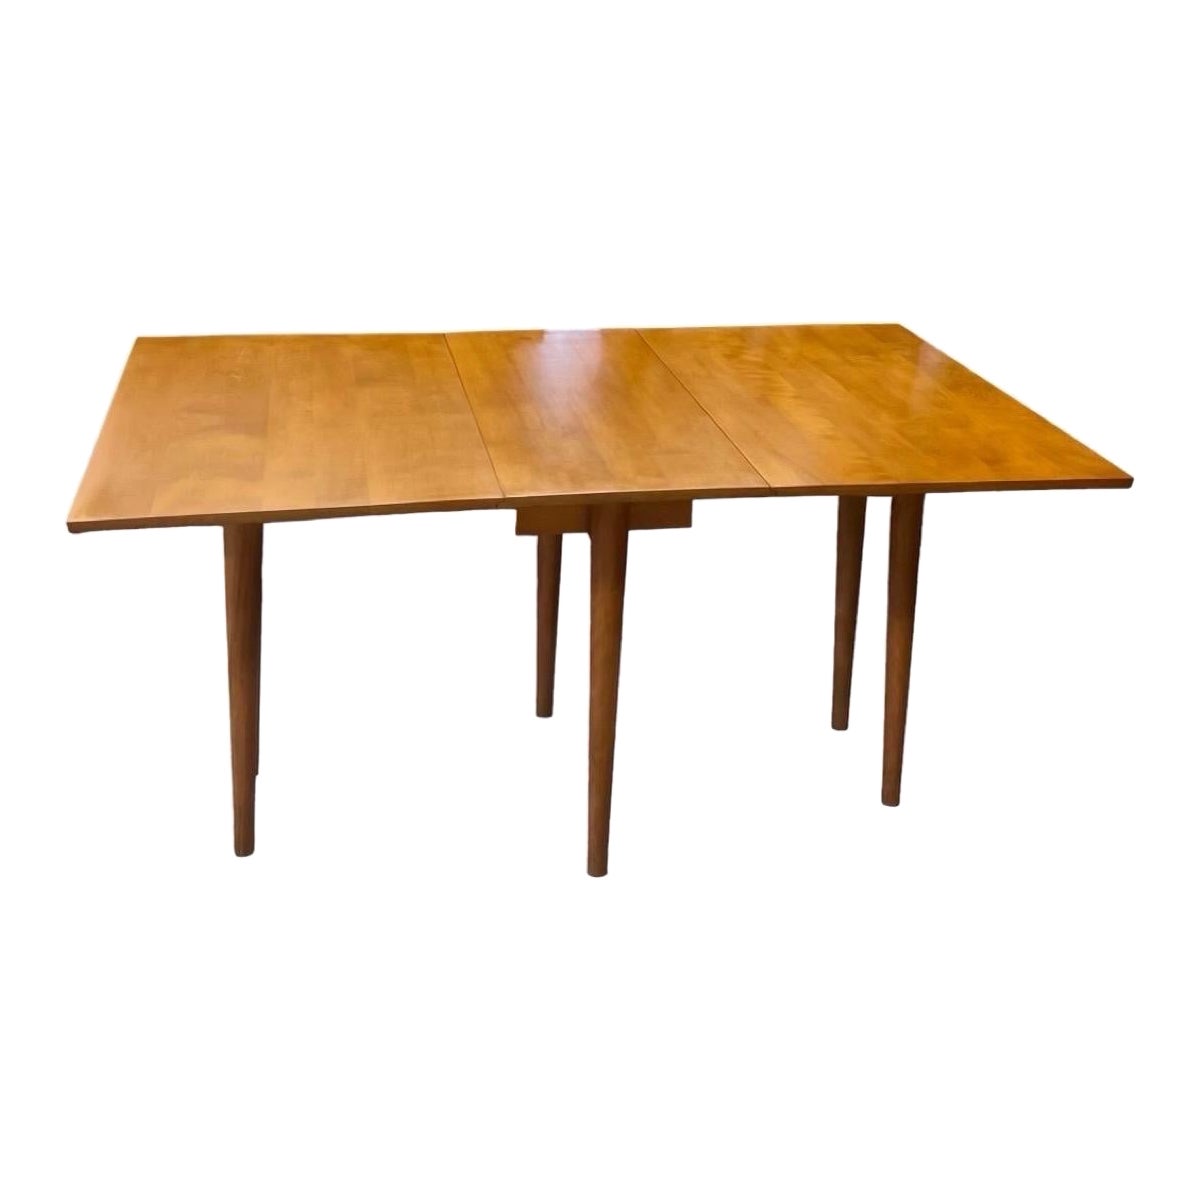 Vintage Midcentury Conant Ball Leslie Diamond Solid Wood Maple Dining Table